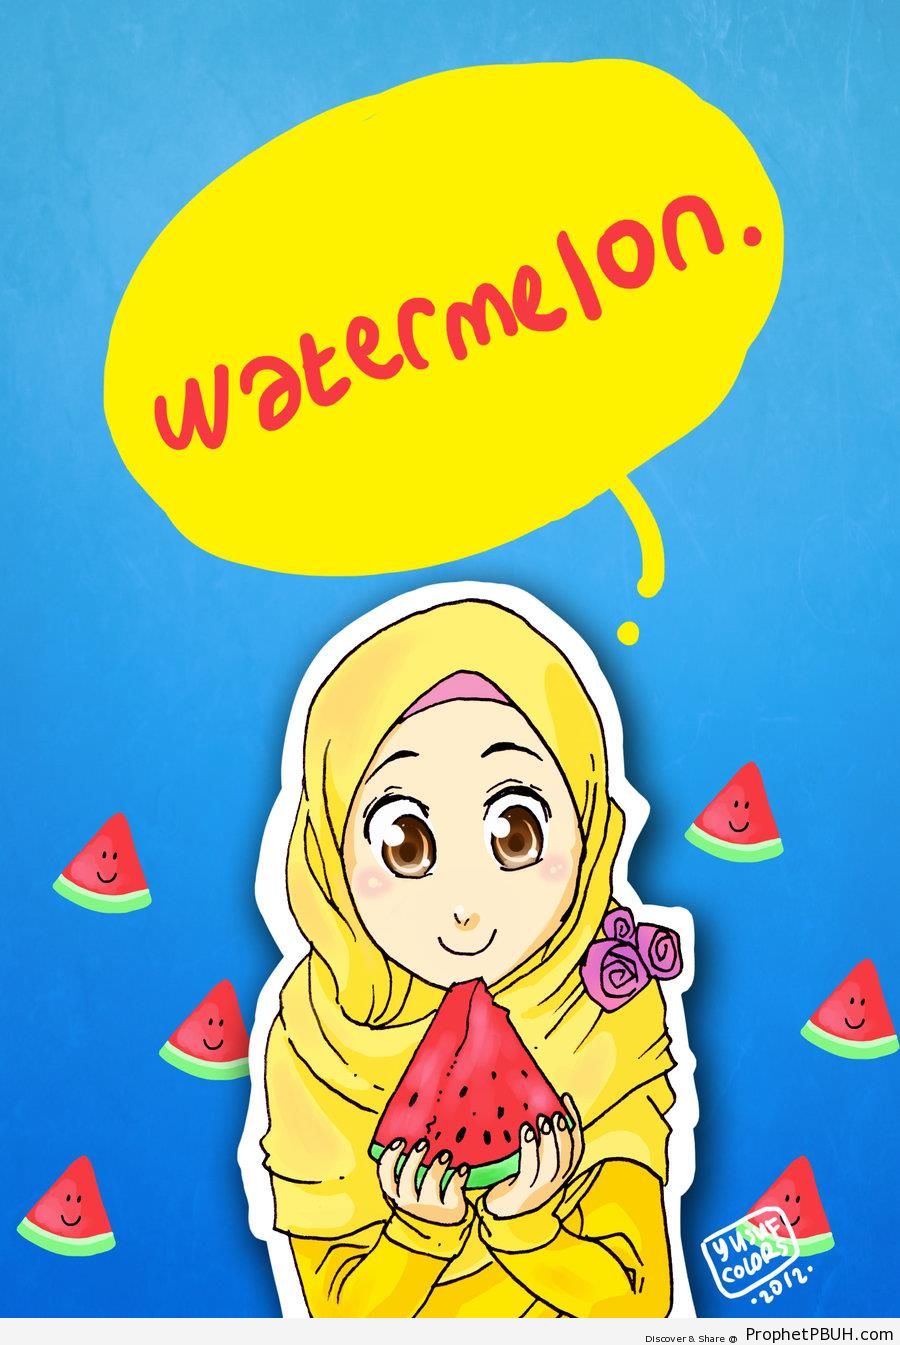 Muslim Woman & Watermelon Slices - Drawings 